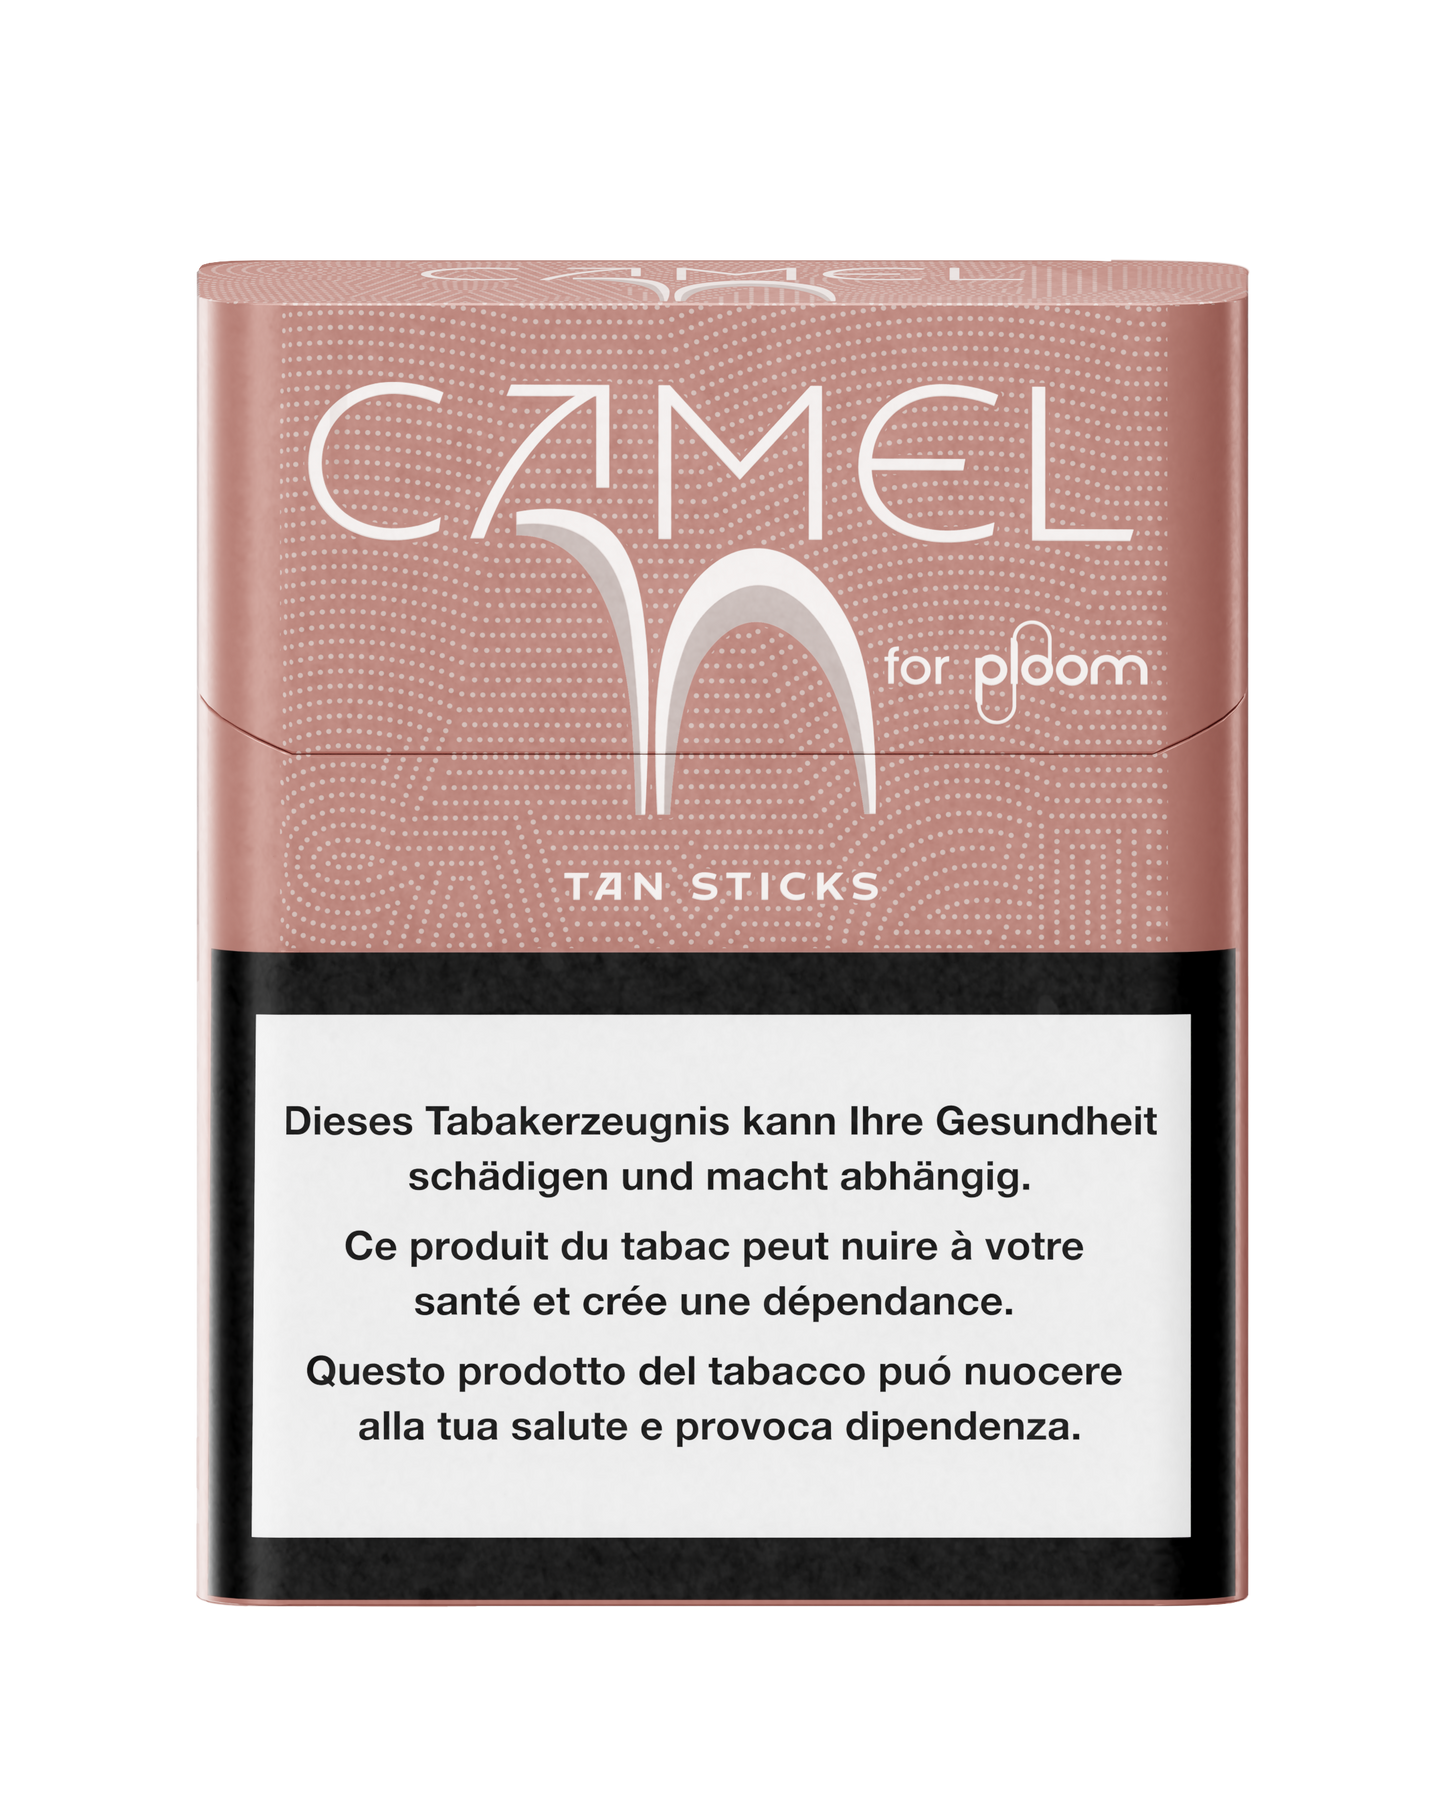 Camel Tan Sticks